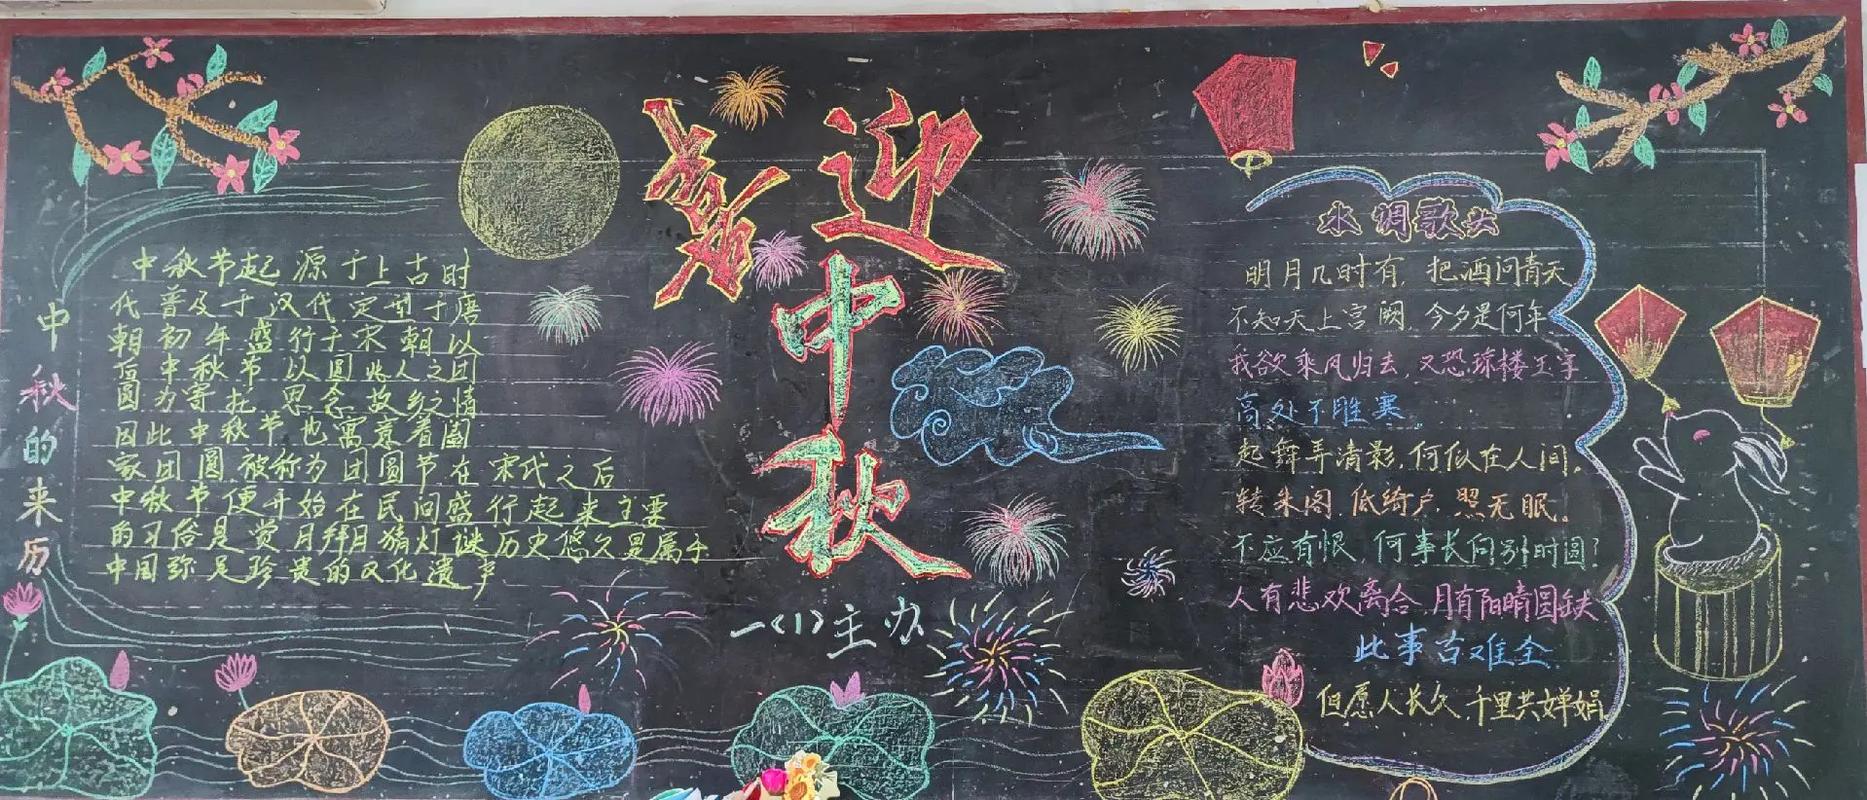 关于中秋节的黑板报图片 粉笔画